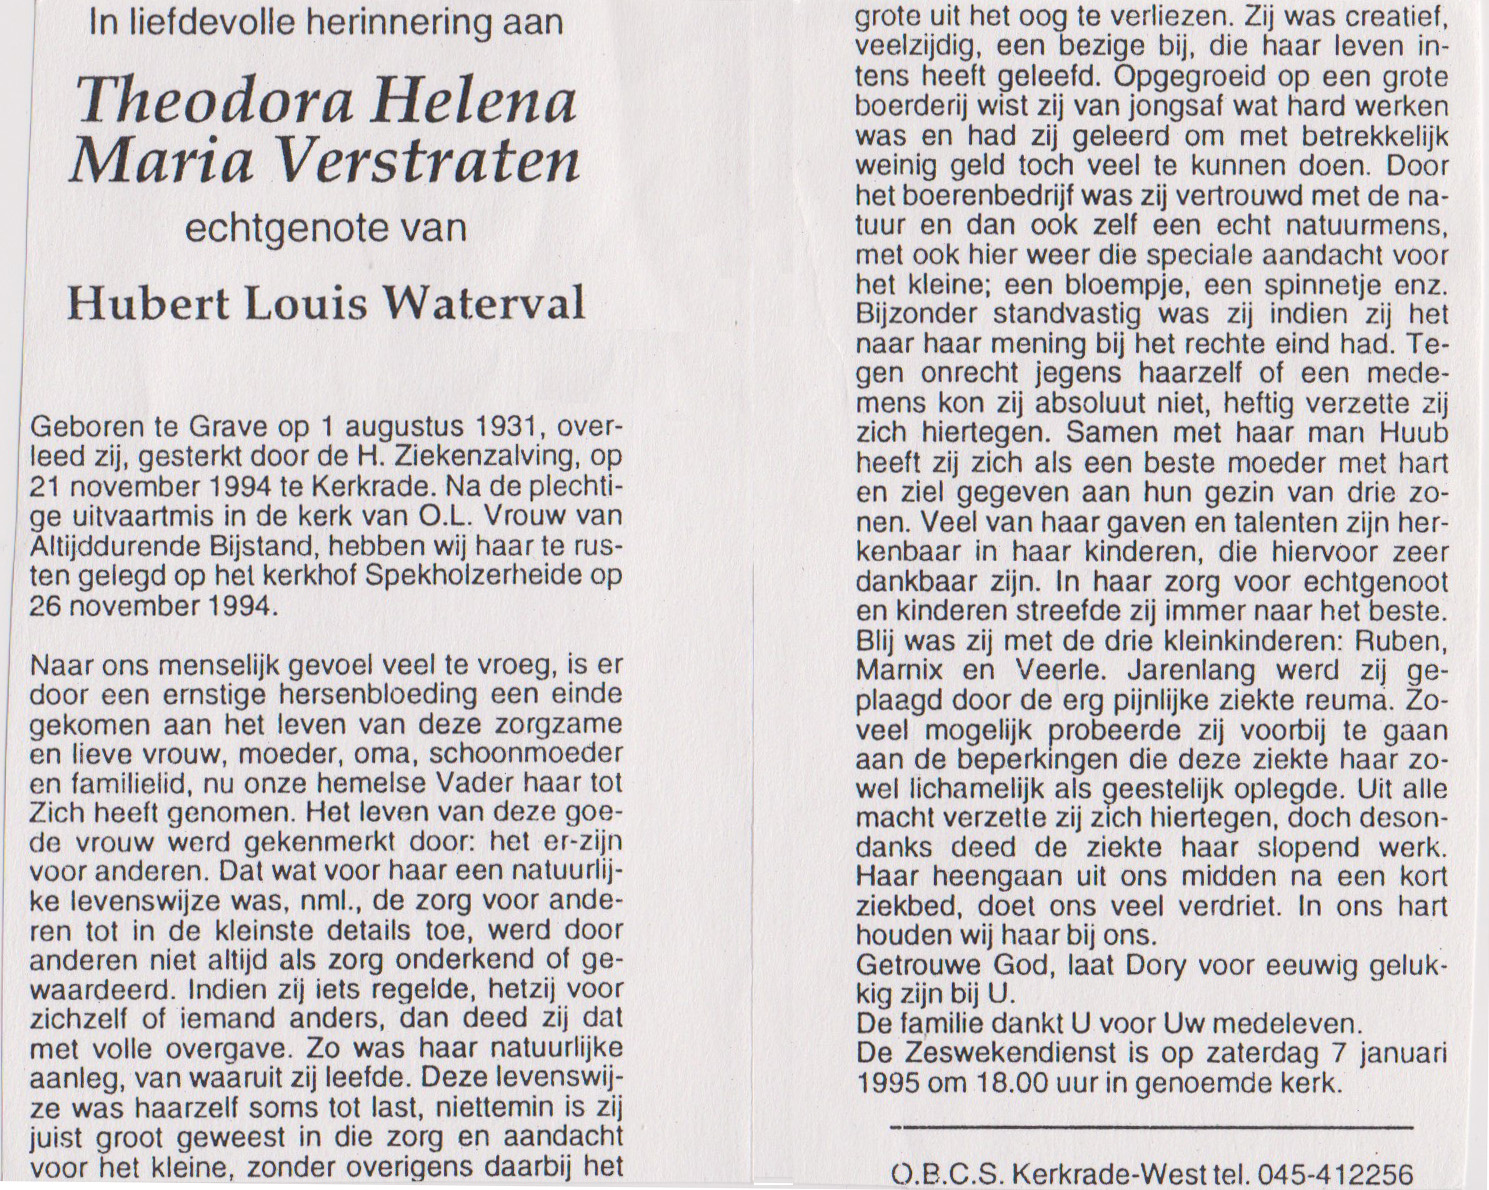 Bidprentje Theodora Helena M.Verstraten